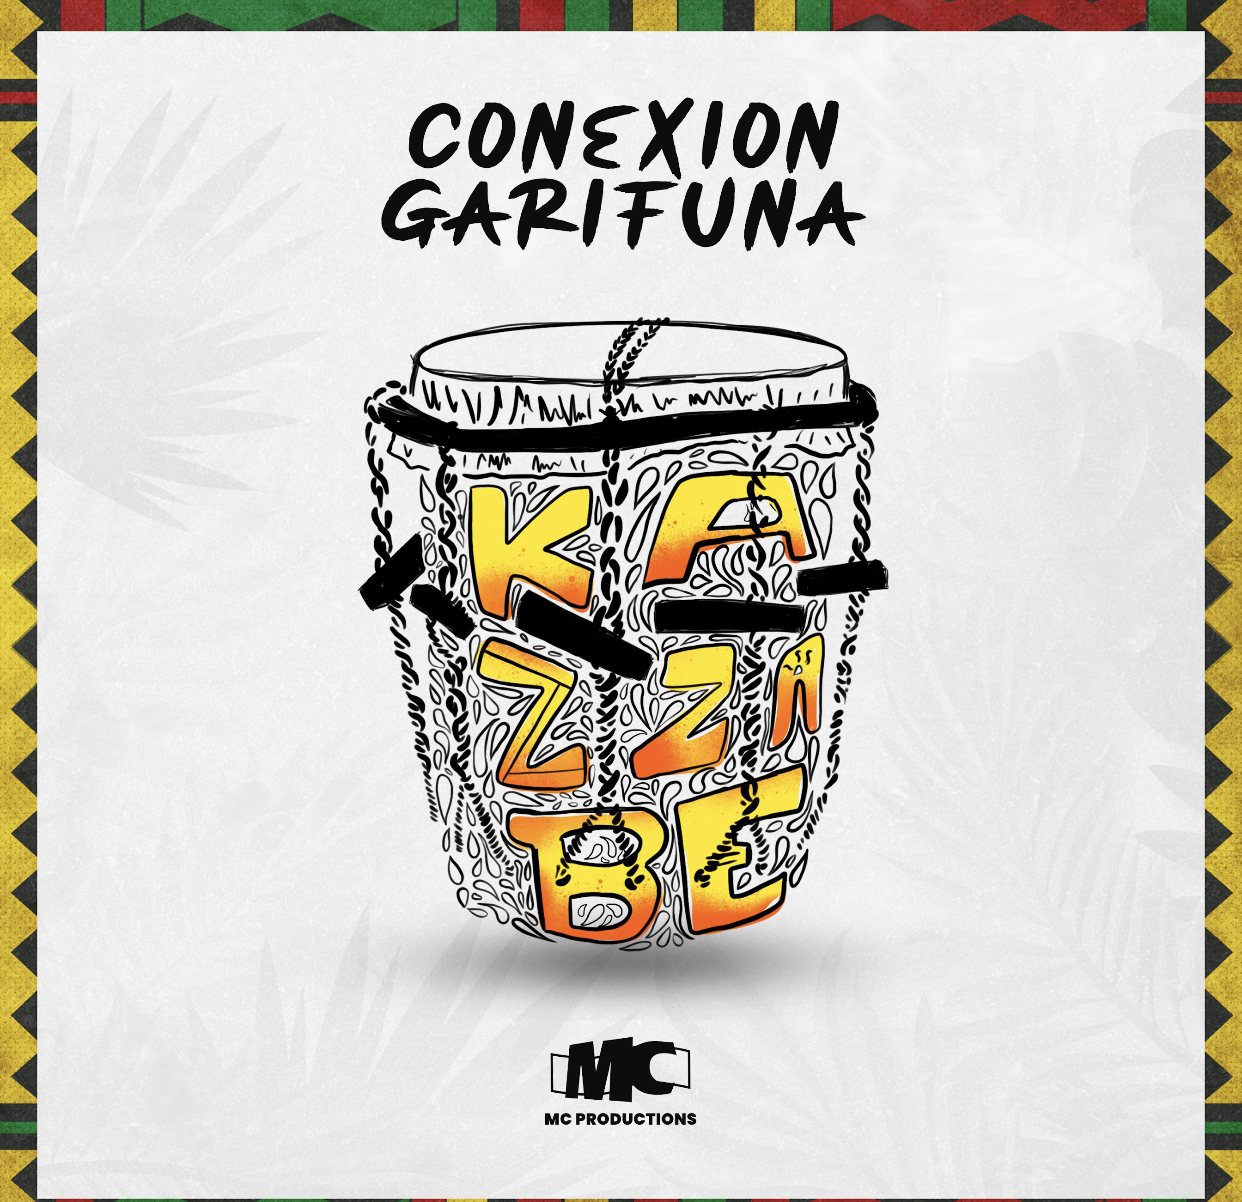 Orquesta Kazzabe lanzó “Conexión Garifuna”, su nuevo álbum